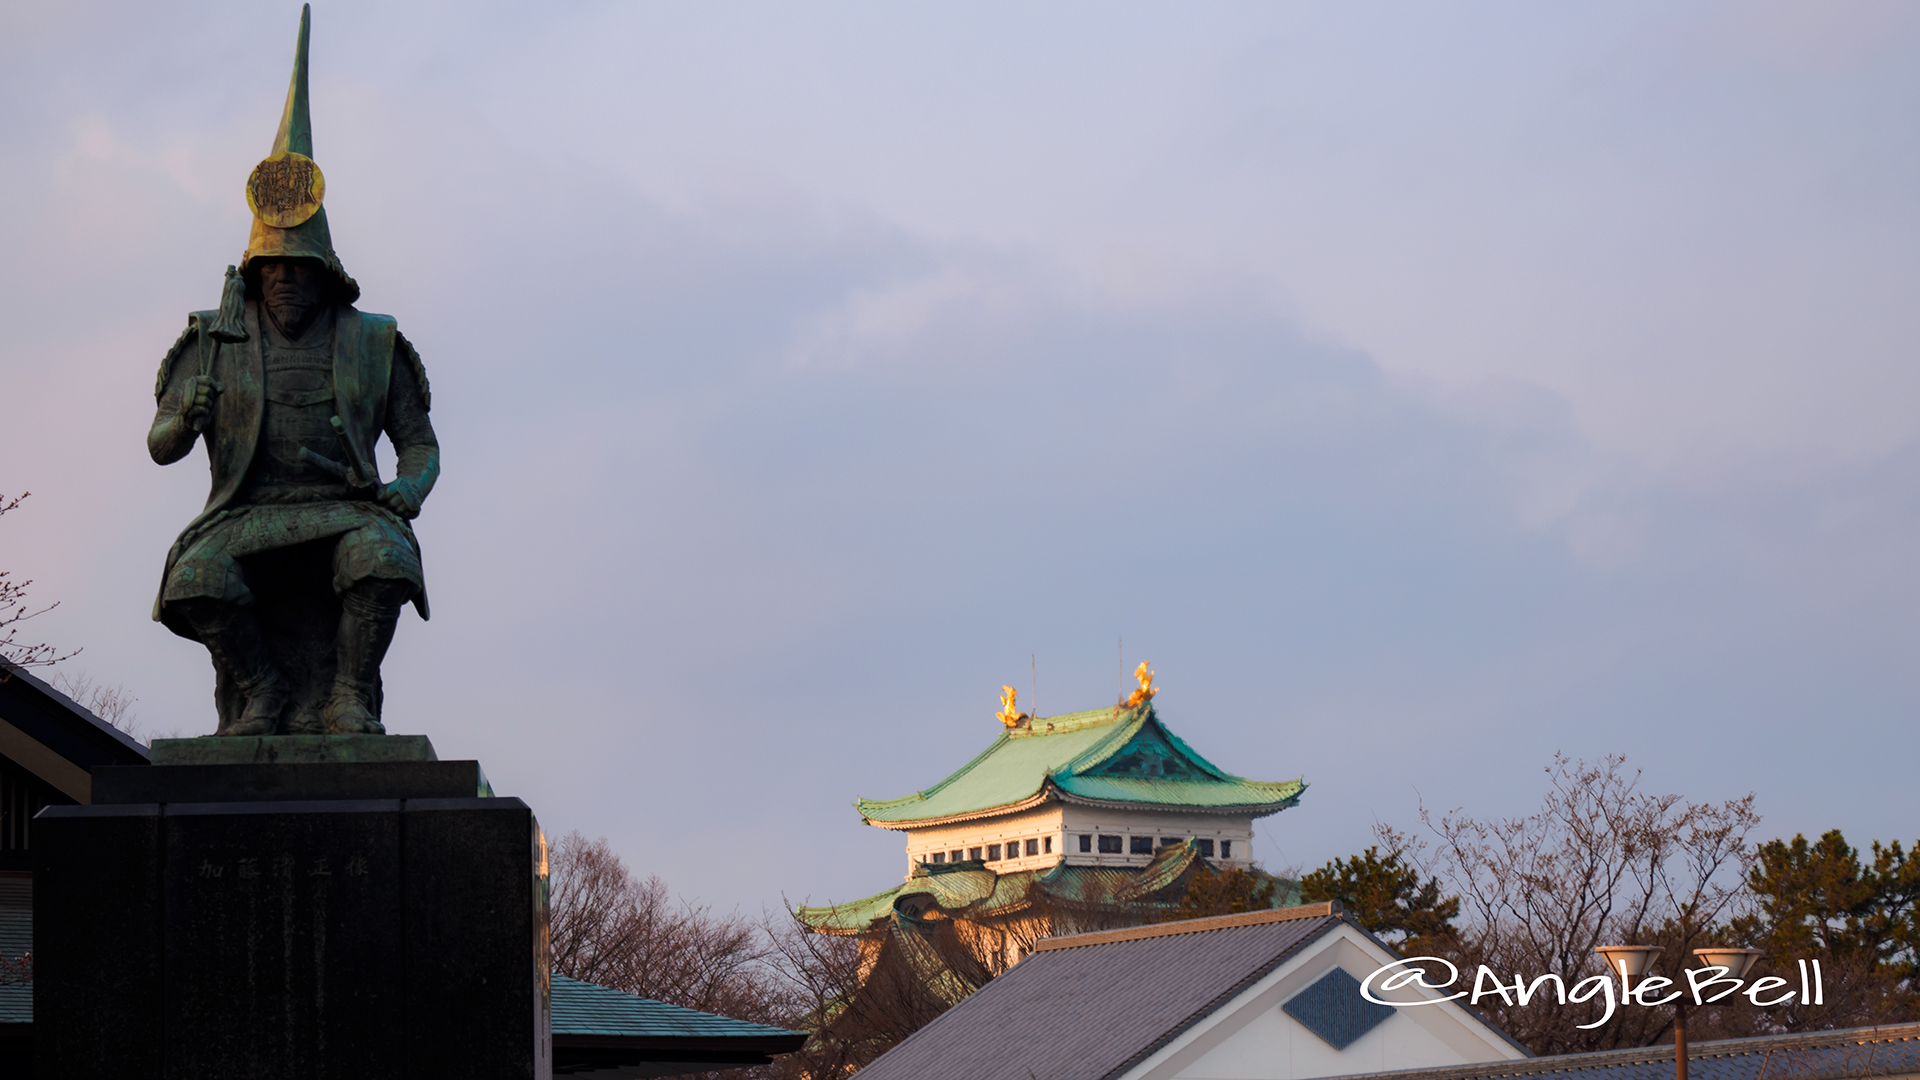 加藤清正像と名古屋城